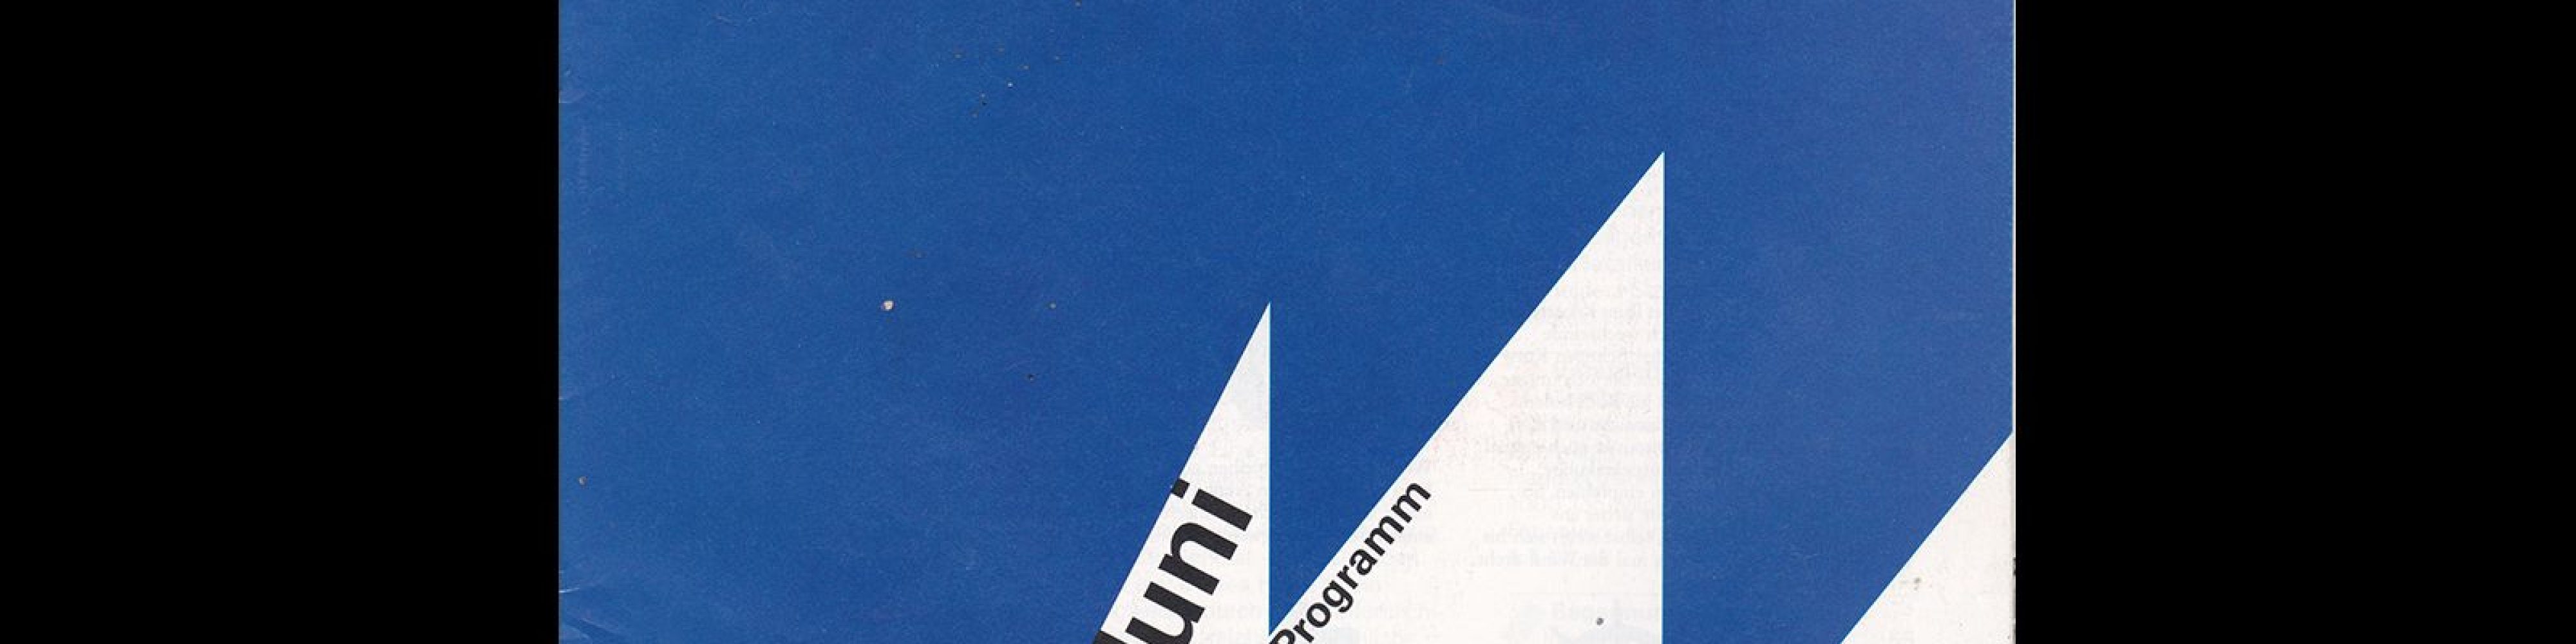 Kieler Woche 1994, Offizielle Programm. Designed by Siegfried Odermatt